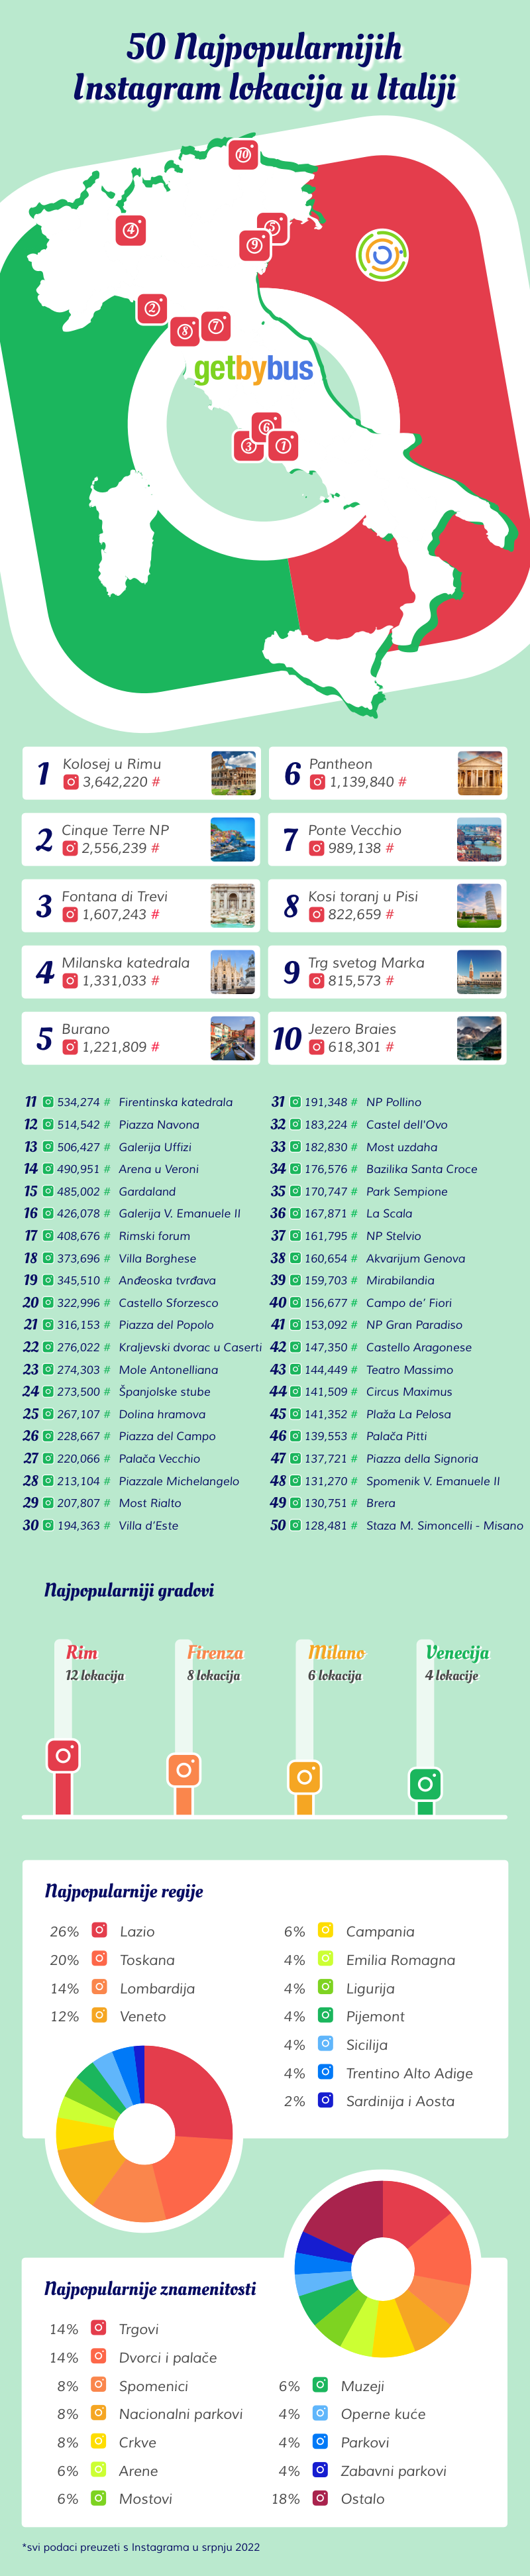 Infografika - najpopularnije Instagram lokacije u Italiji